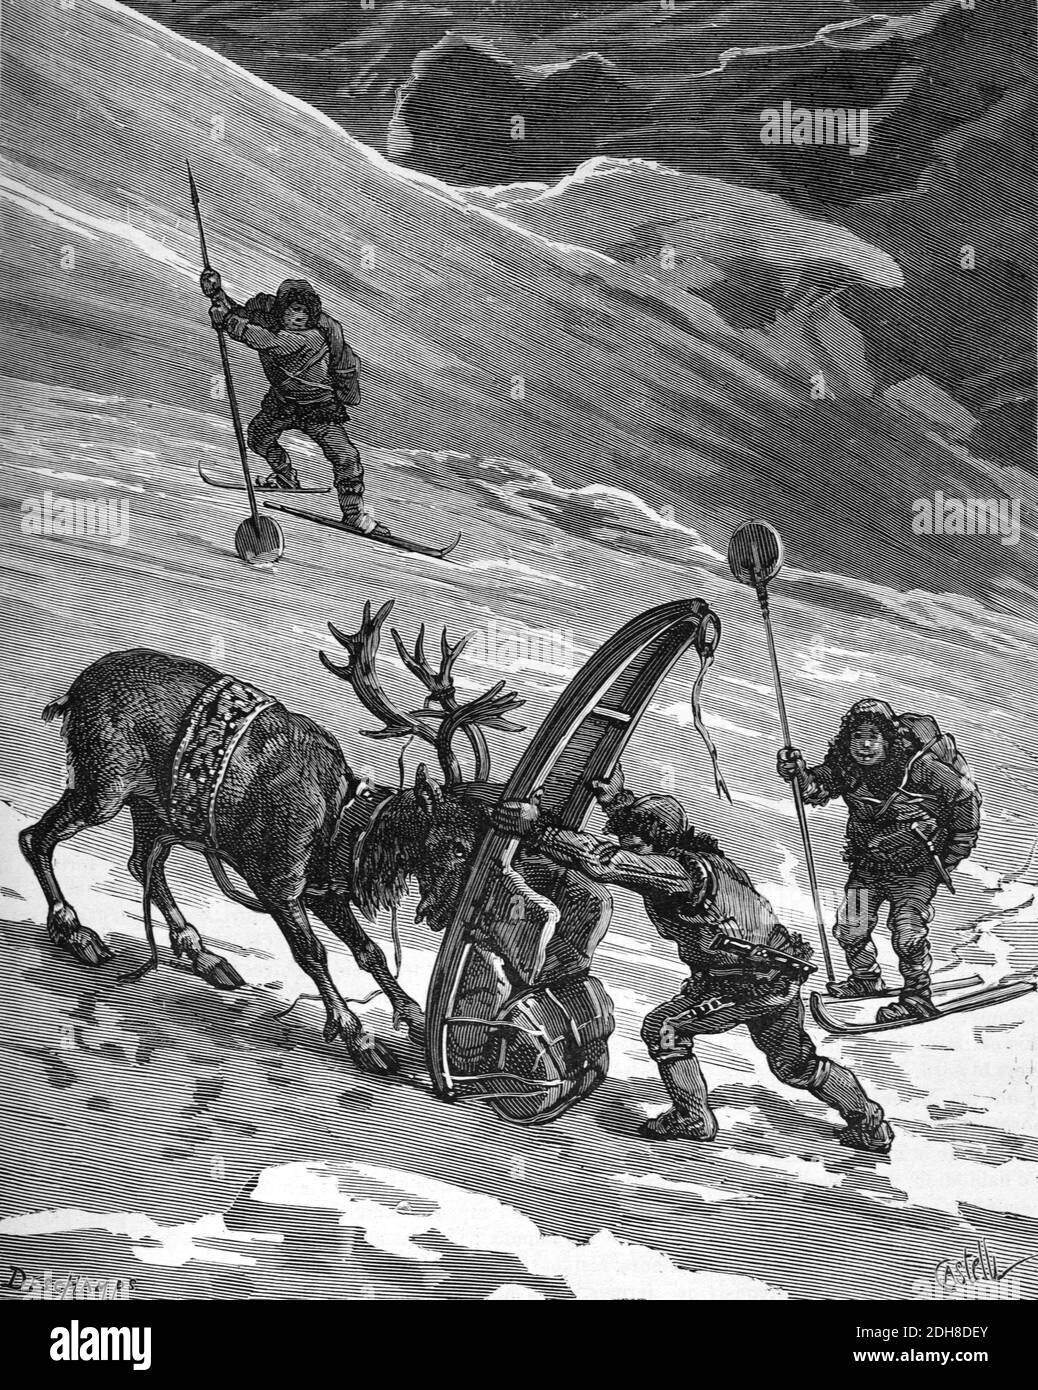 Renna Herding tra i Sami o Lapps di Lapponia (Englr 1880 Deschamps-Castelli) Illustrazione o incisione d'epoca Foto Stock